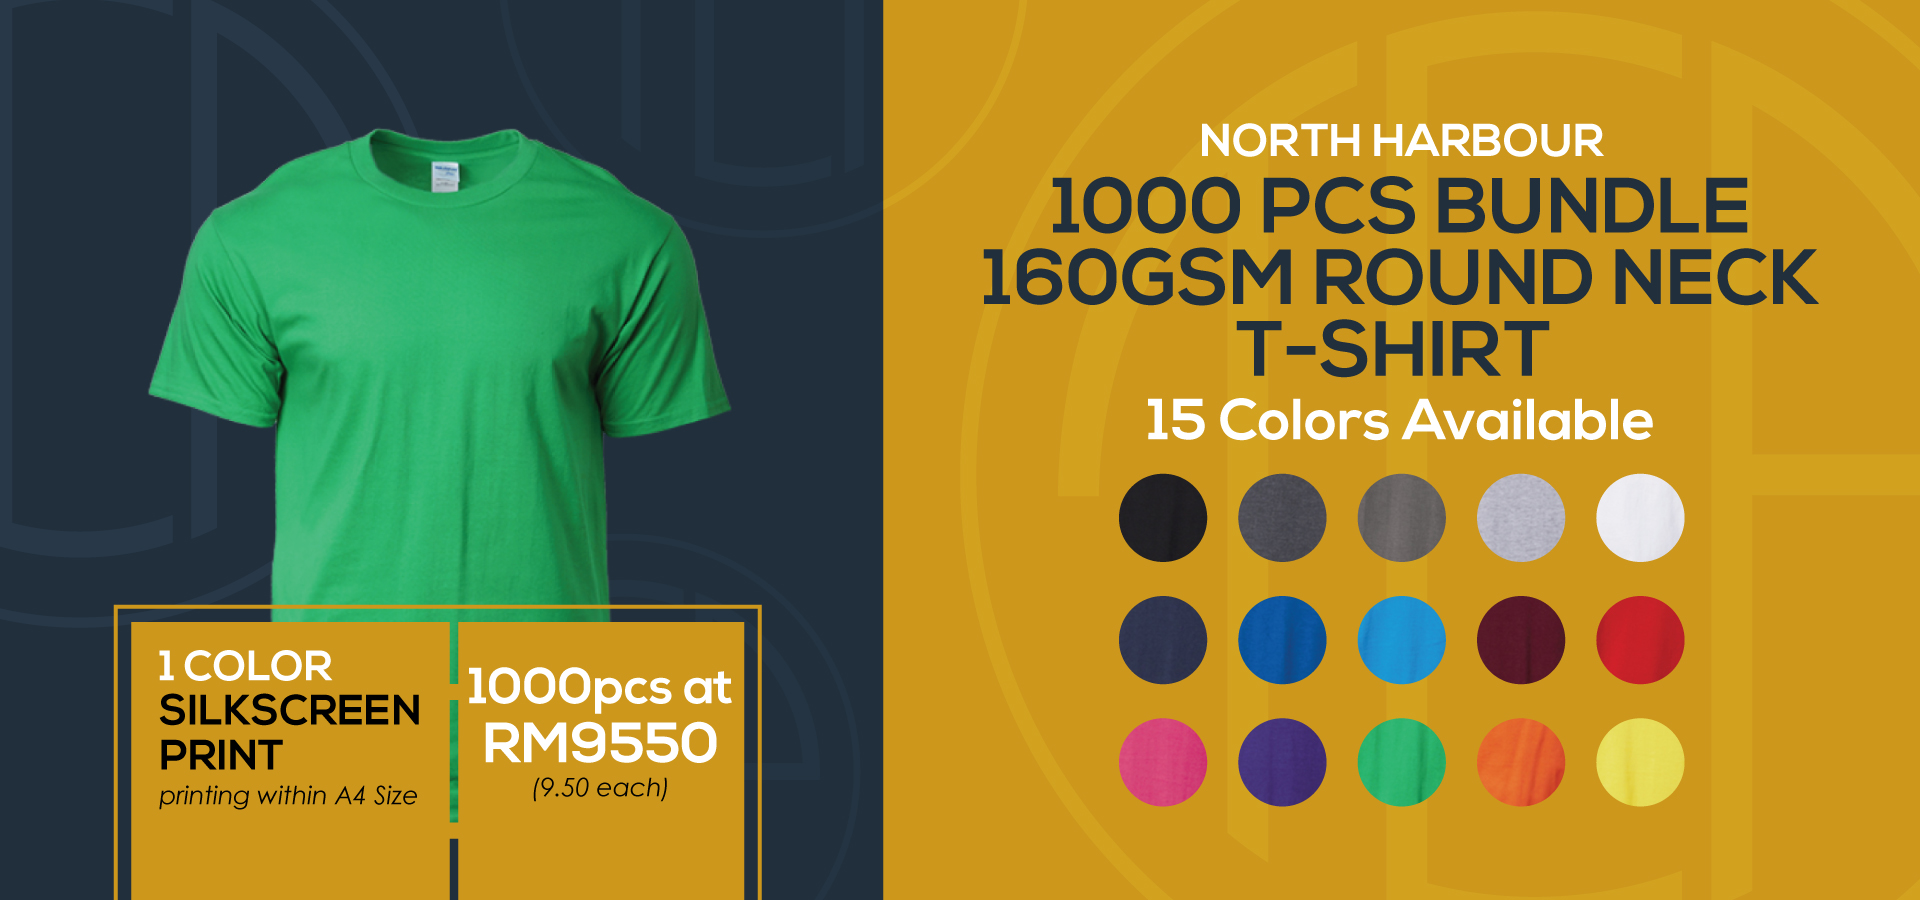 Promotion-Page-Silkscreen-Print-1000PCS-North-Harbour-T-Shirt-Bundle